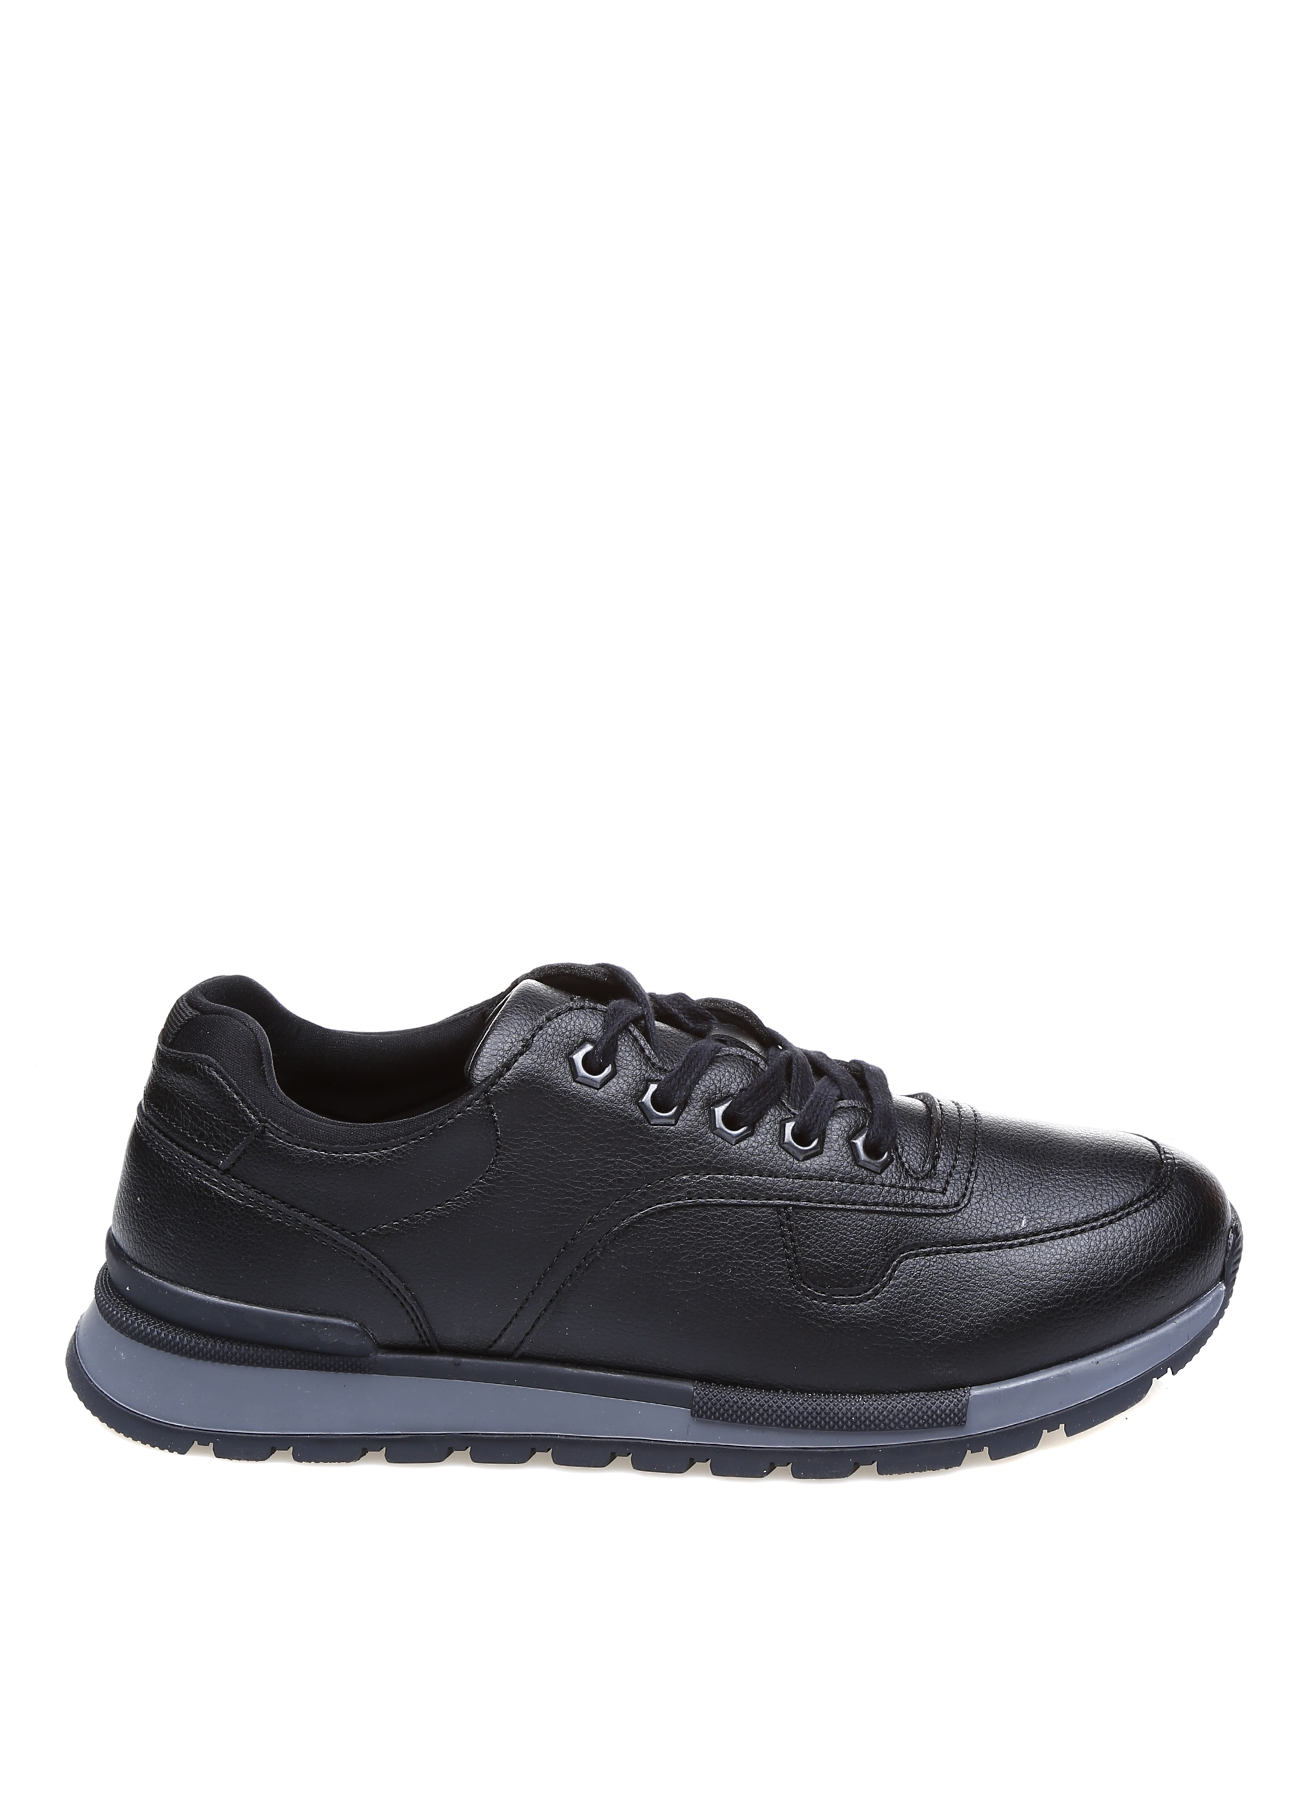 Dockers Klasik Ayakkabı 44 5001921434002 Ürün Resmi